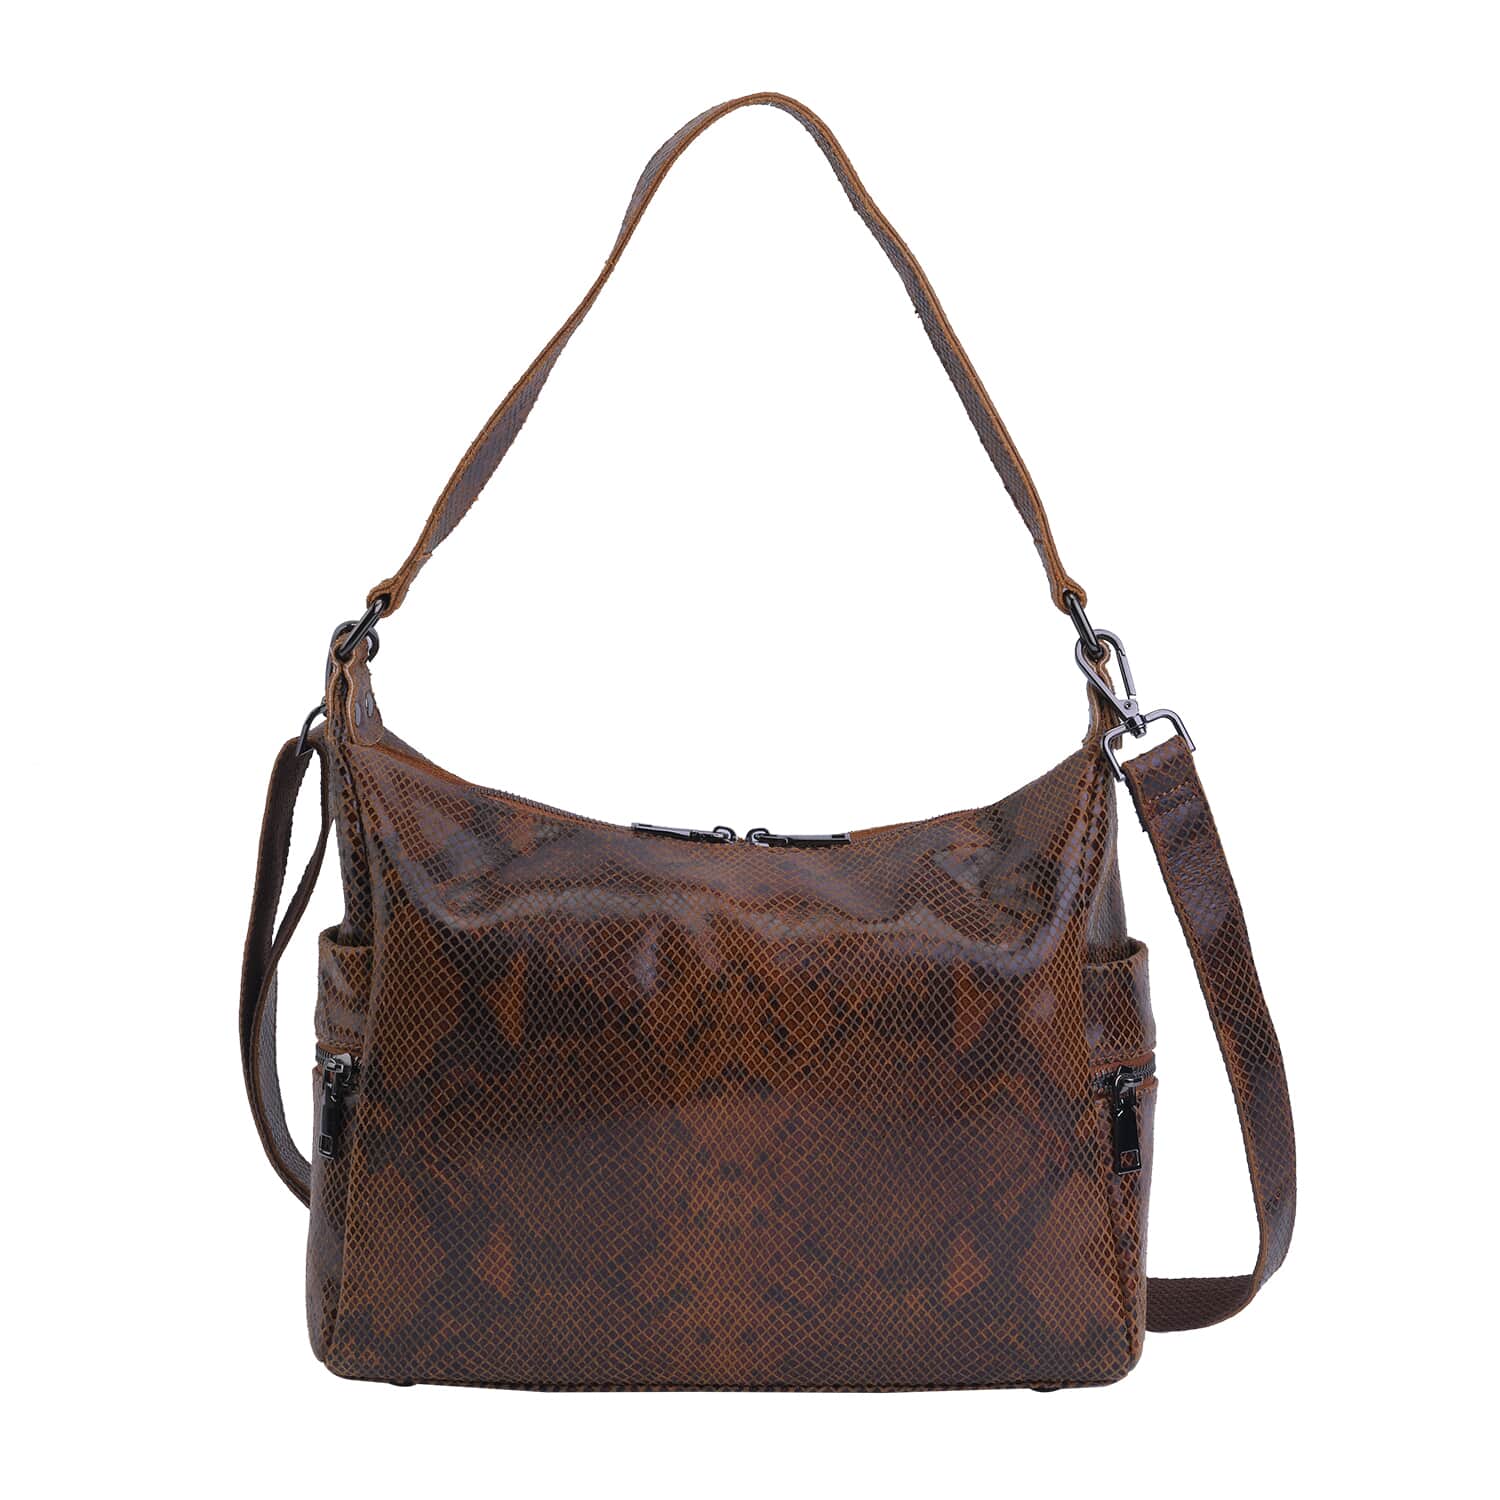 Buy Tan and Black Python Embossed Print Genuine Leather Hobo Bag